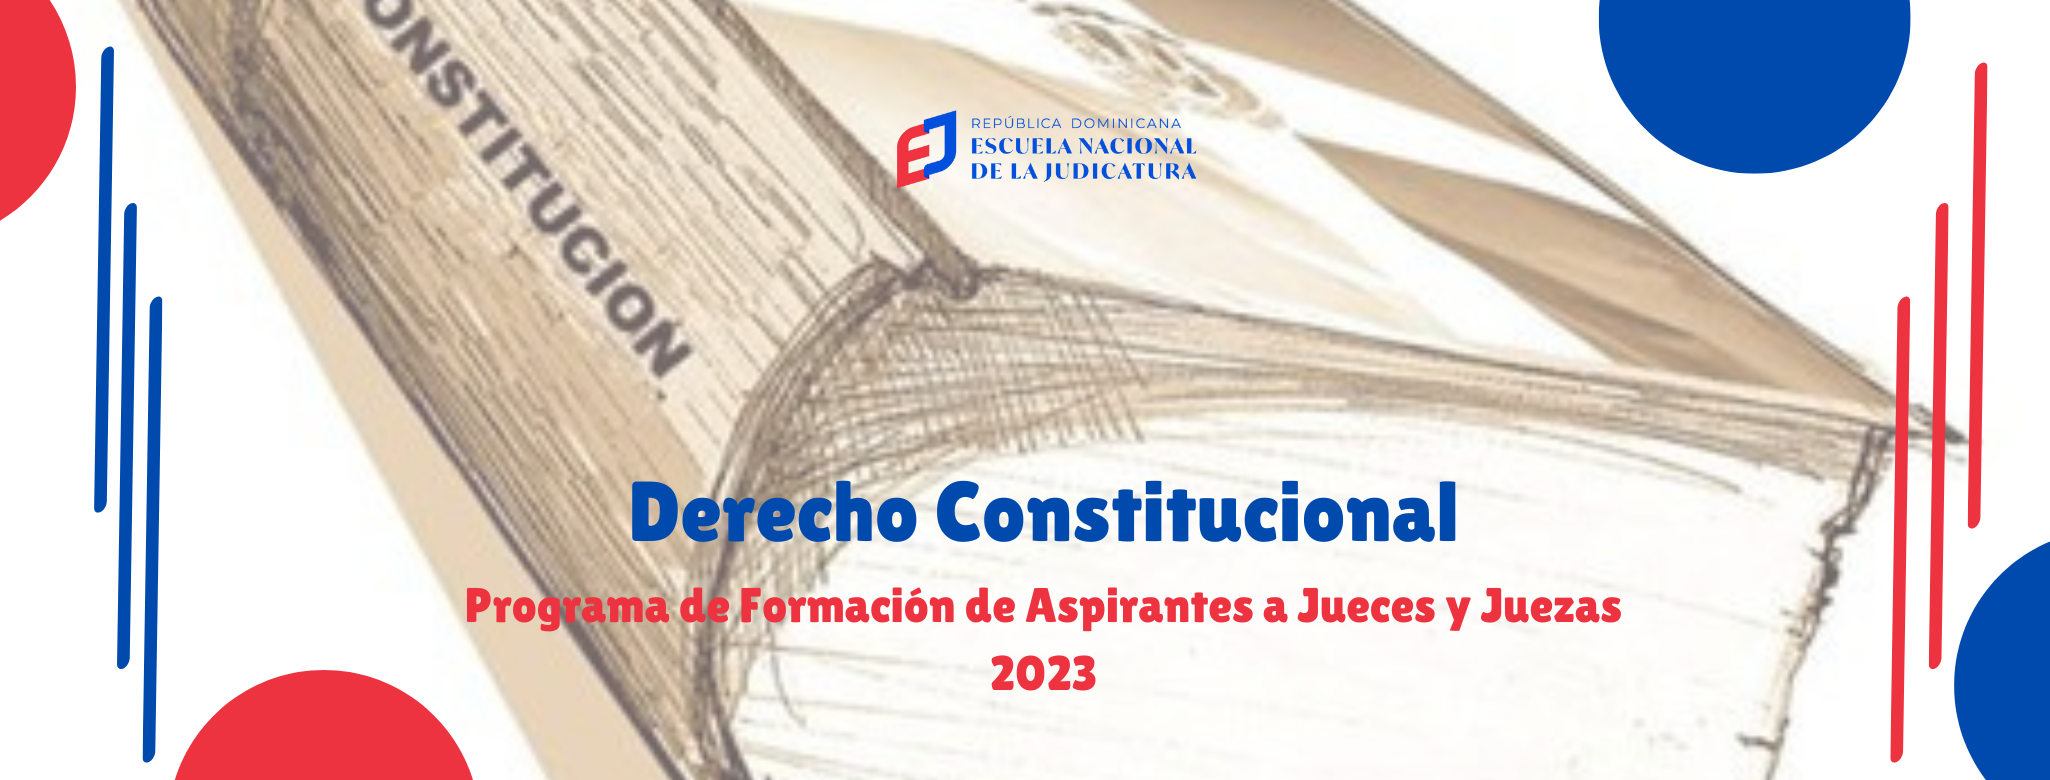 MDJ-201-24-01 Asignatura Derecho Constitucional (AJ 2023)